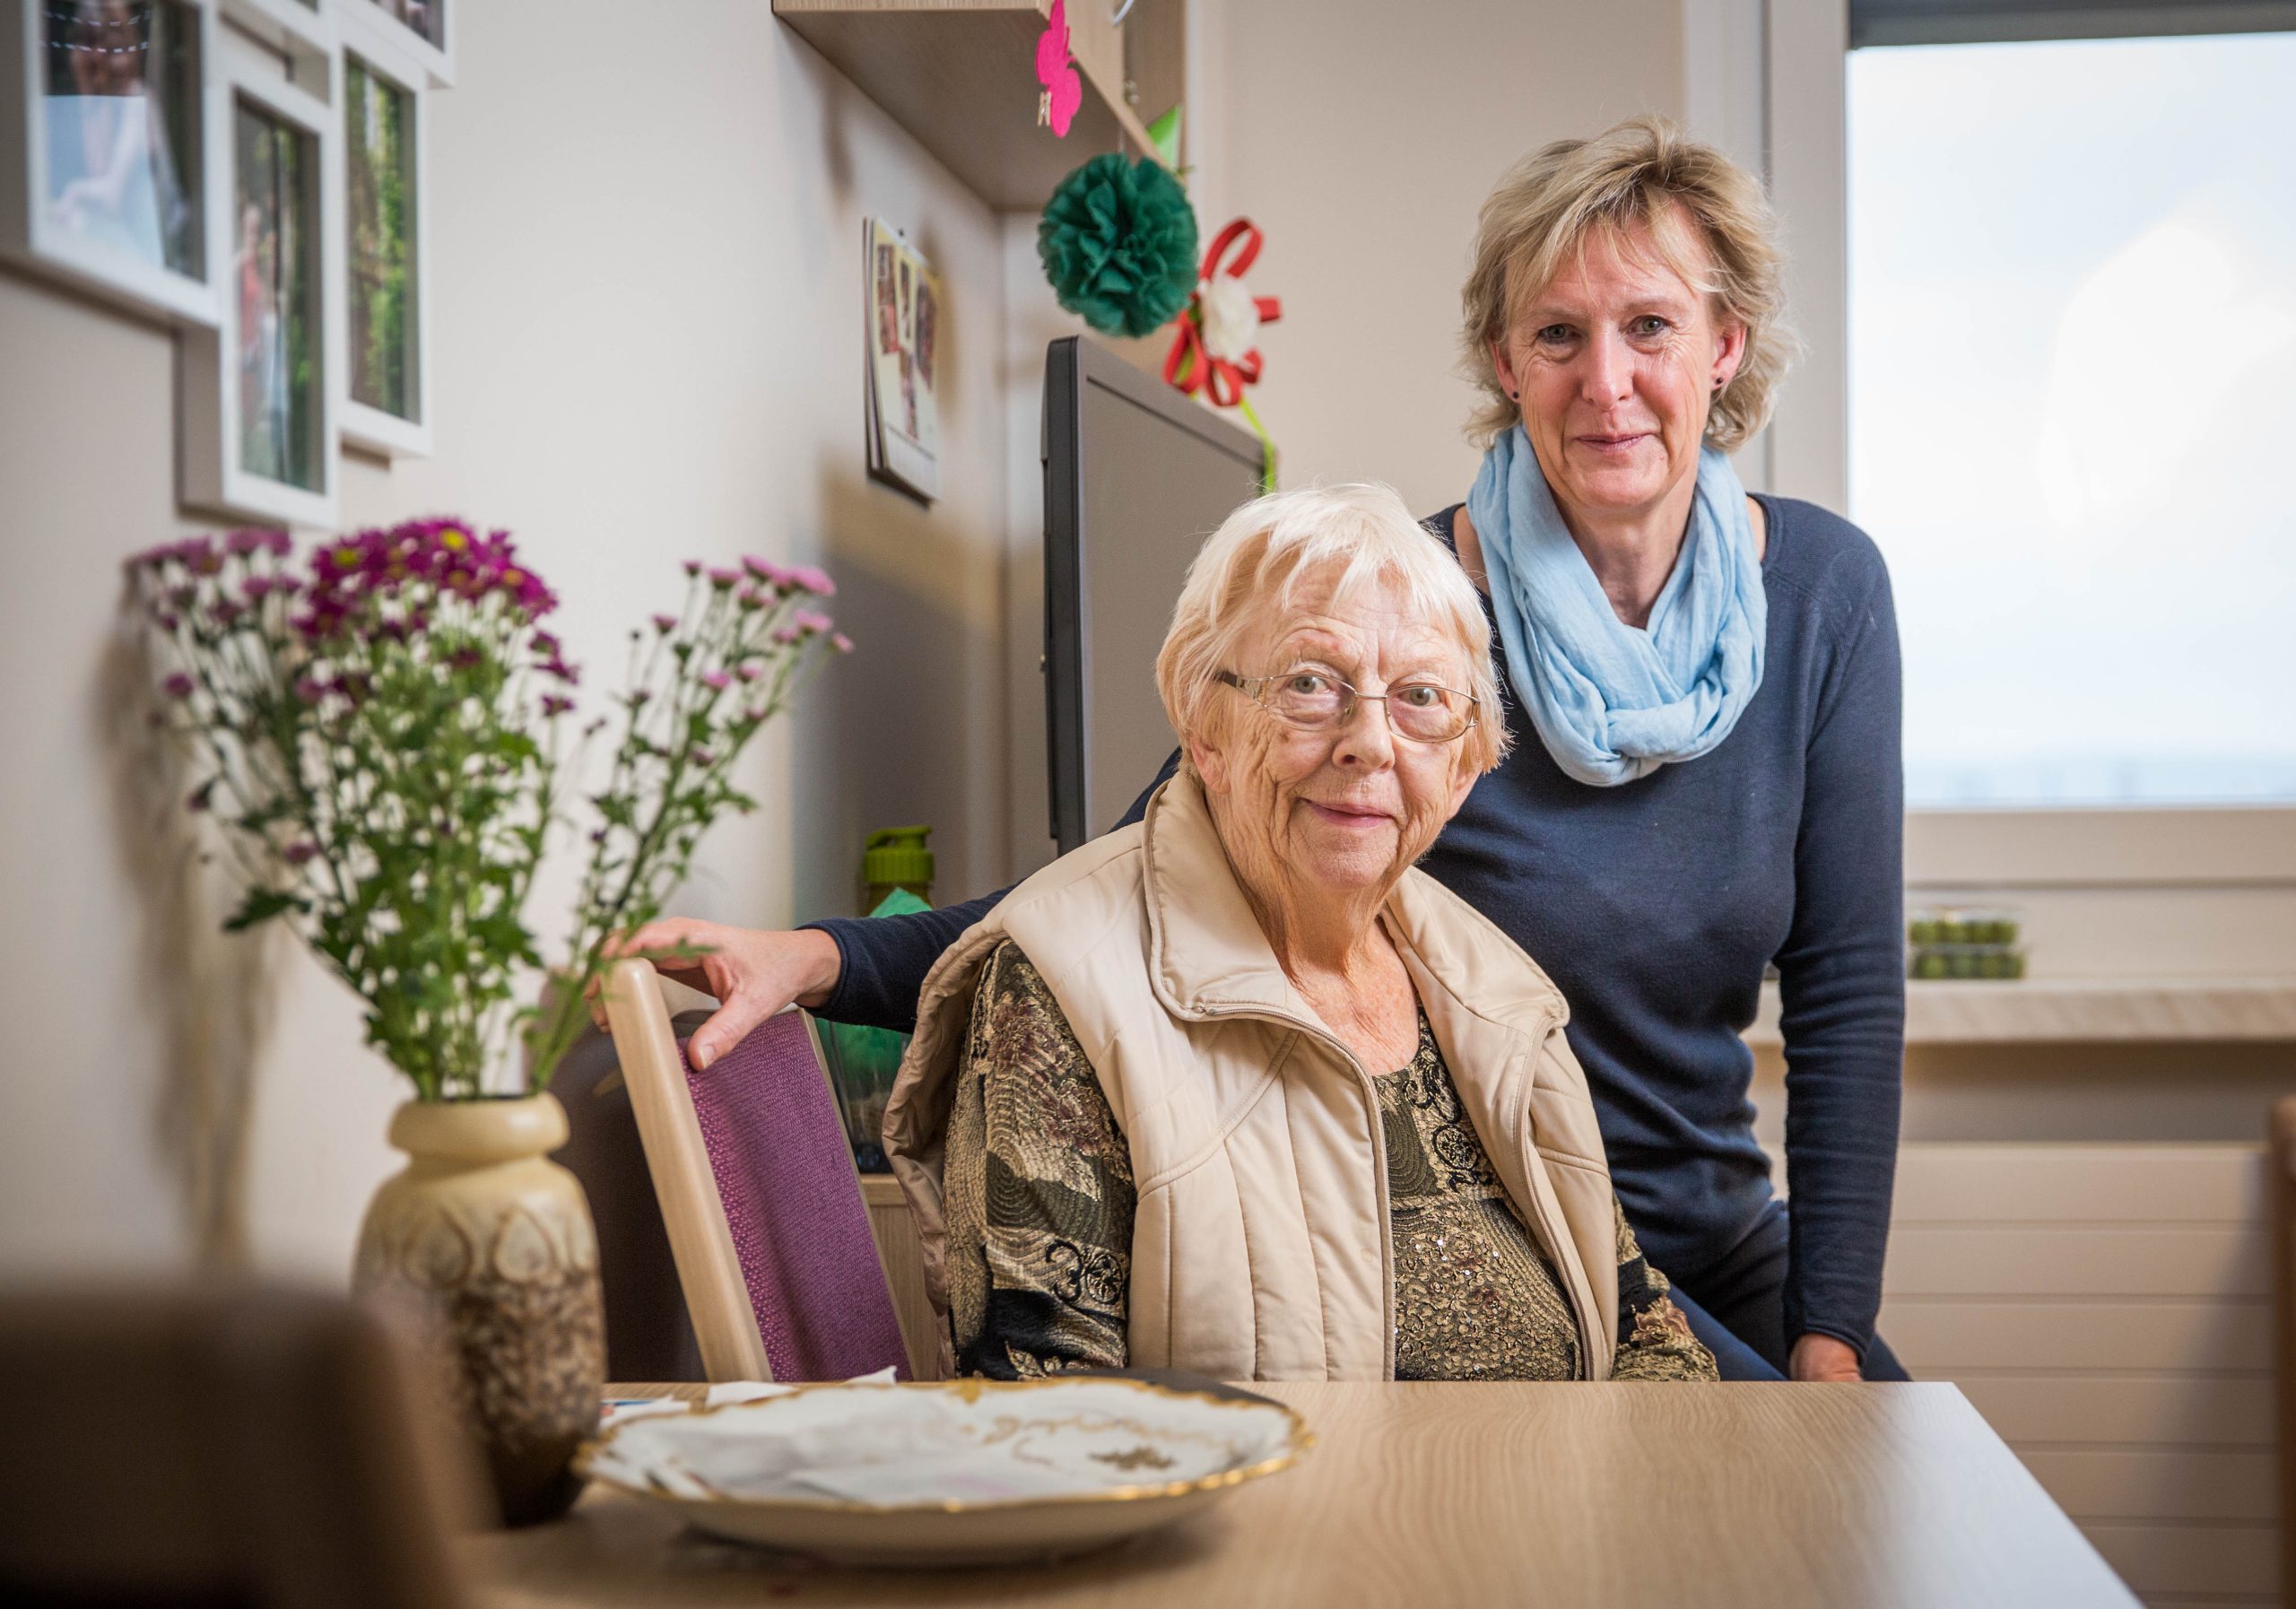 Seniorenheimbewohnerin Rosemarie Wolff mit ihrer Tochter Iris sind am Tisch im Seniorenheim.